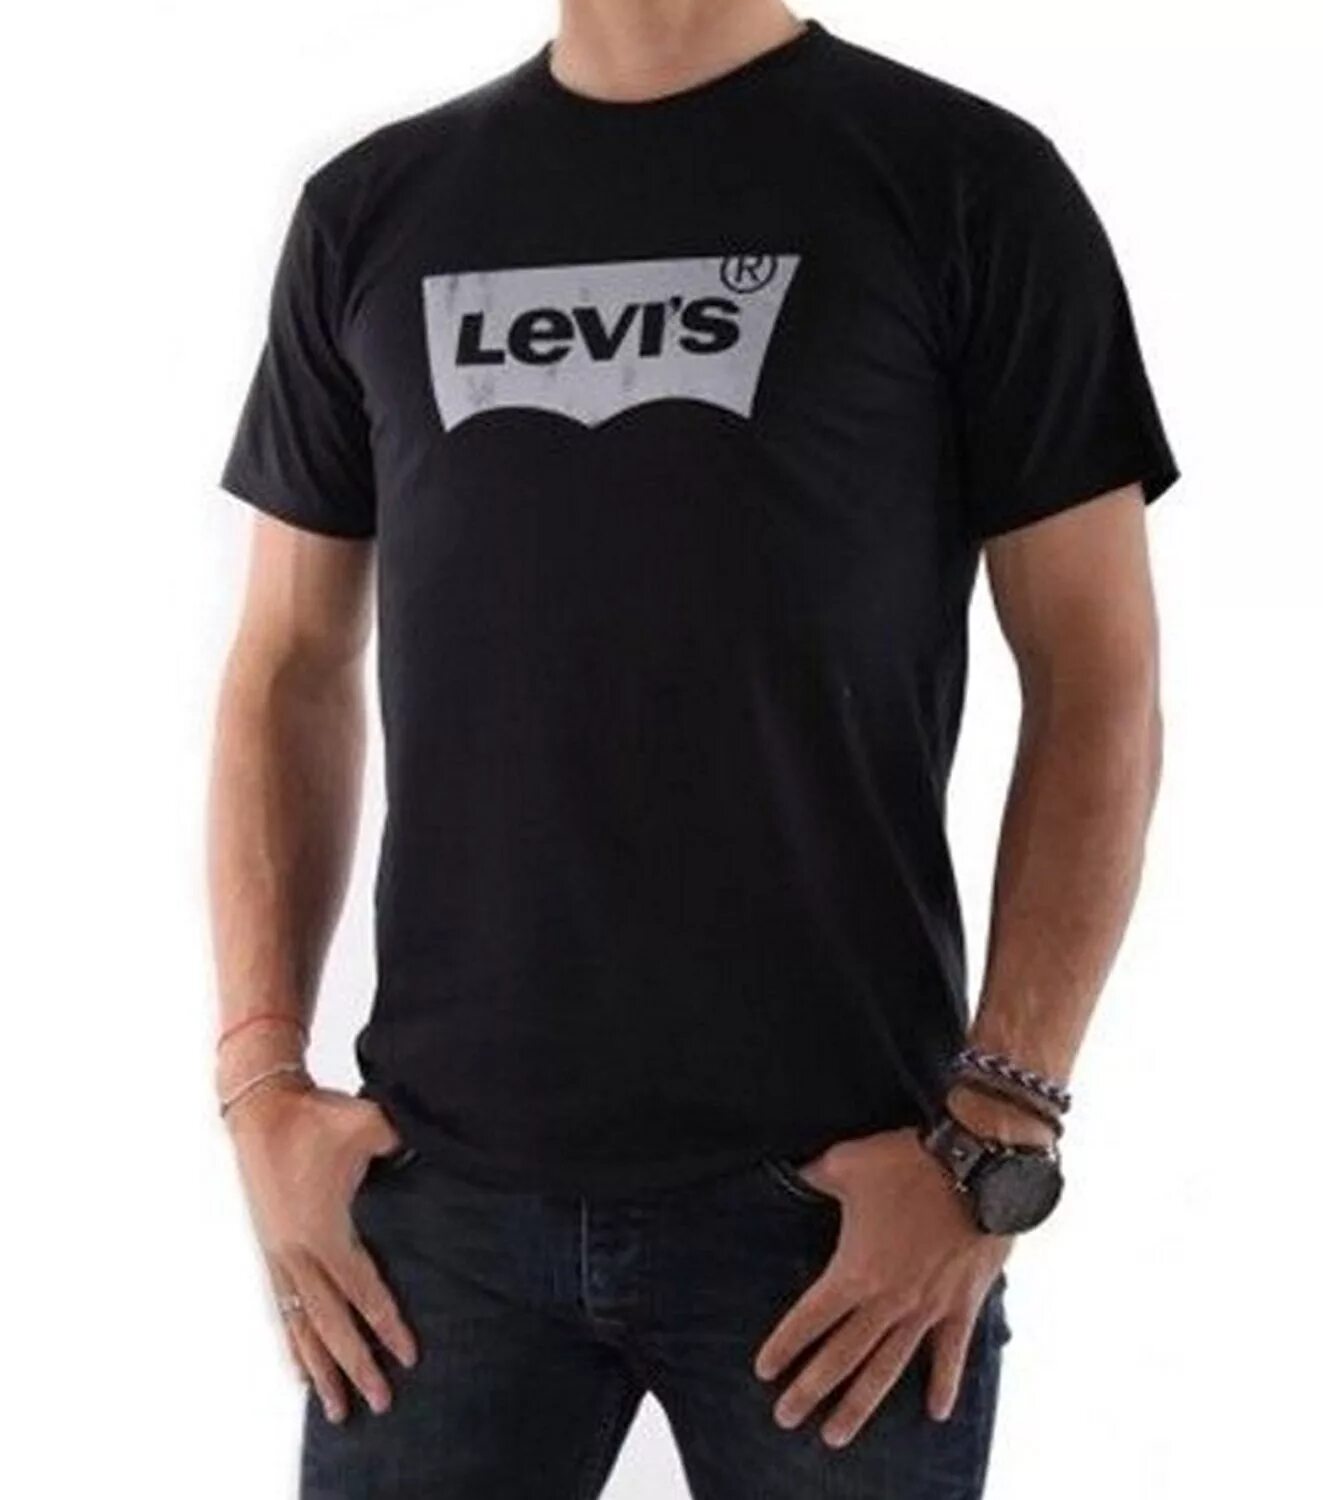 Левайс майка черная мужская. Футболка Levis мужская лого. Футболка левайс черная мужская. Levis женская черная футболка Levis.